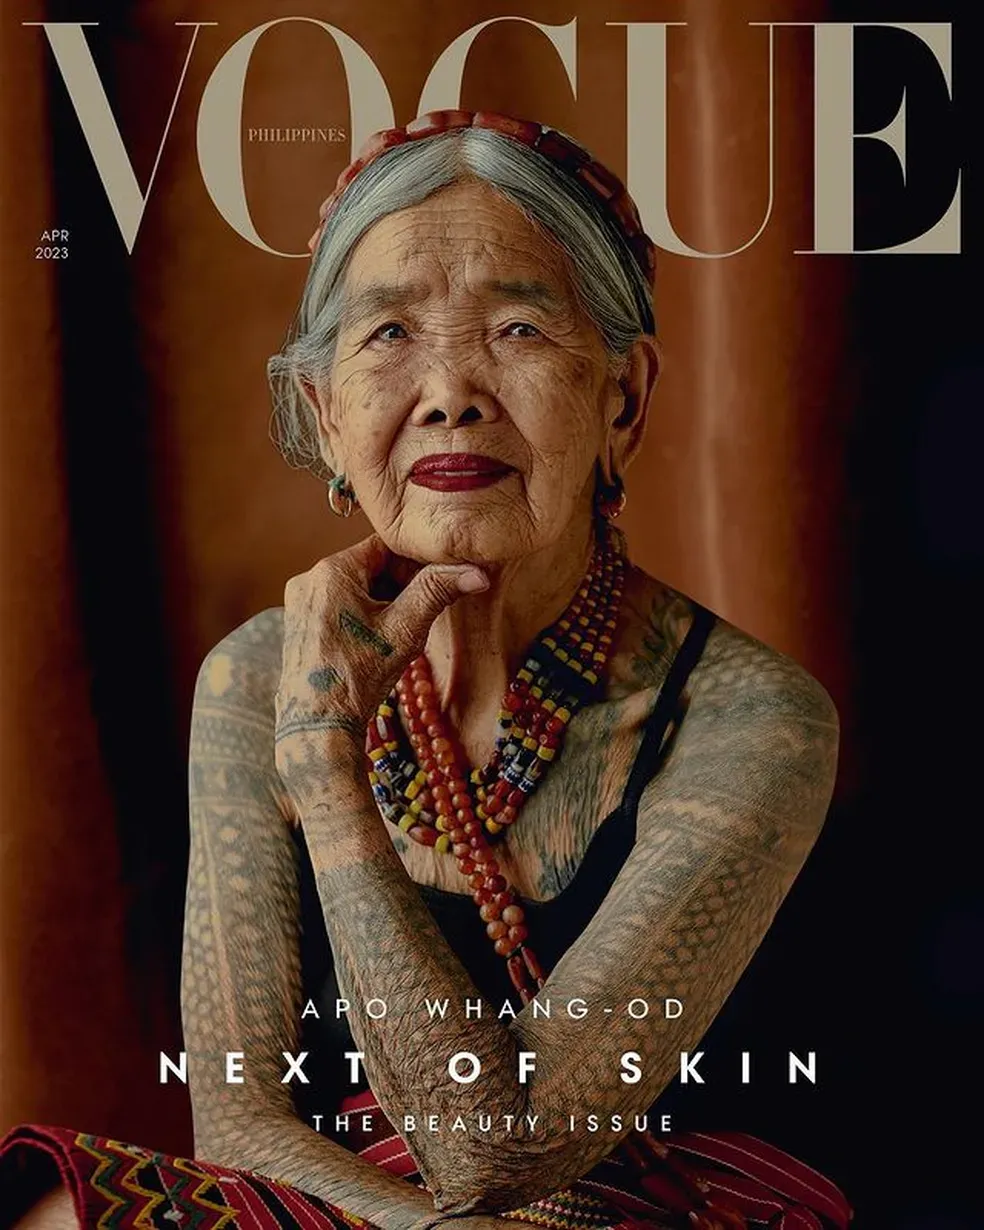 Mulher indígena de 106 anos se torna pessoa mais velha a aparecer na capa da Vogue - Reprodução/Vogue